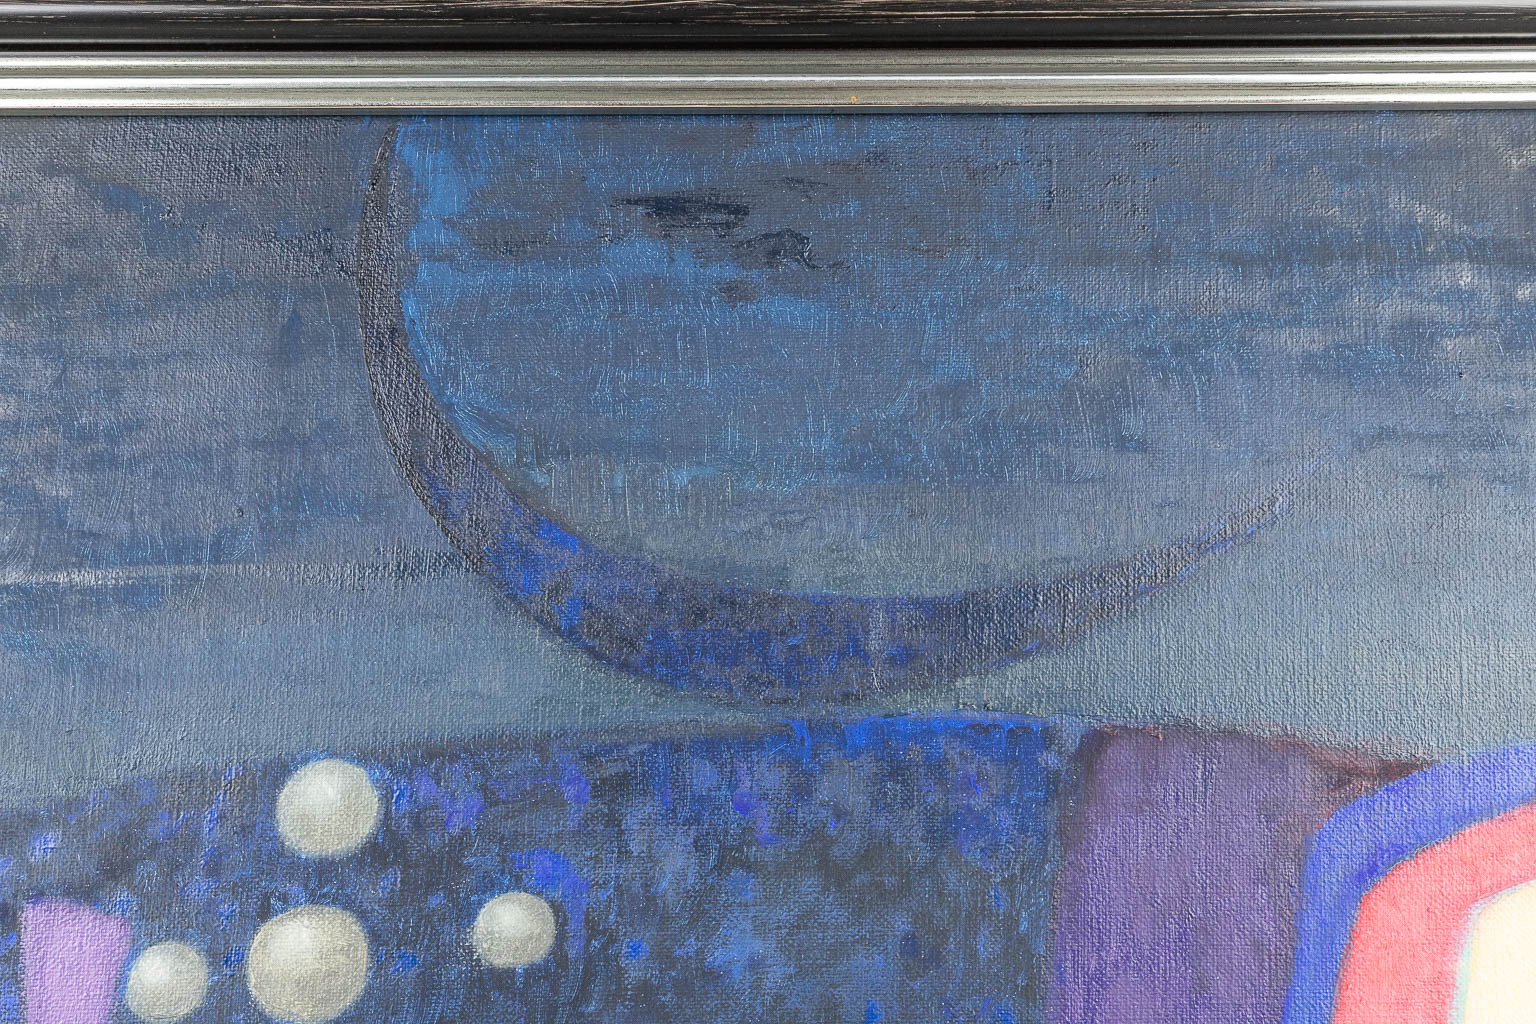 Jef VAN TUERENHOUT (1926-2006) 'Met haar ogen vol schaduw', a painting, oil on canvas. (150 x 200 cm)